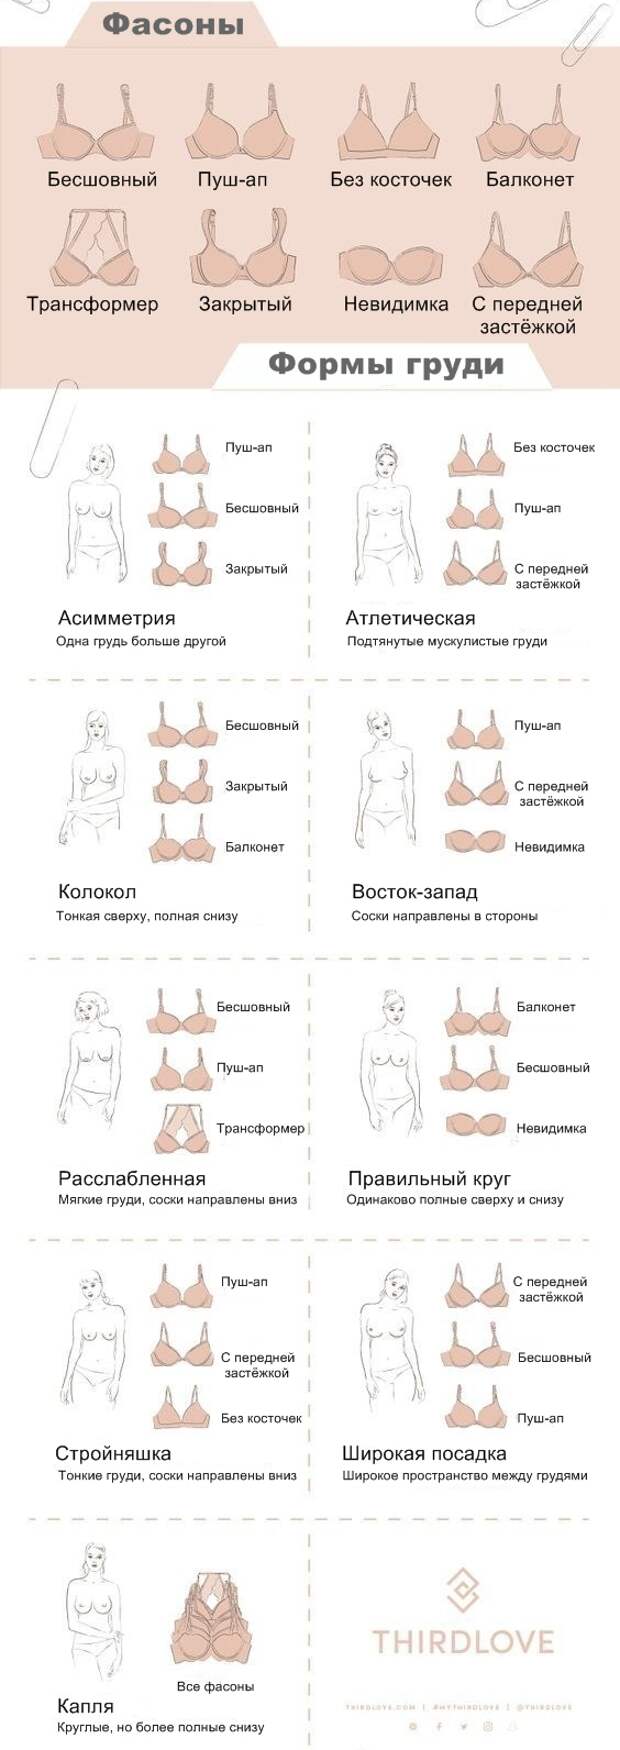 какие есть формы груди у женщин фото 18